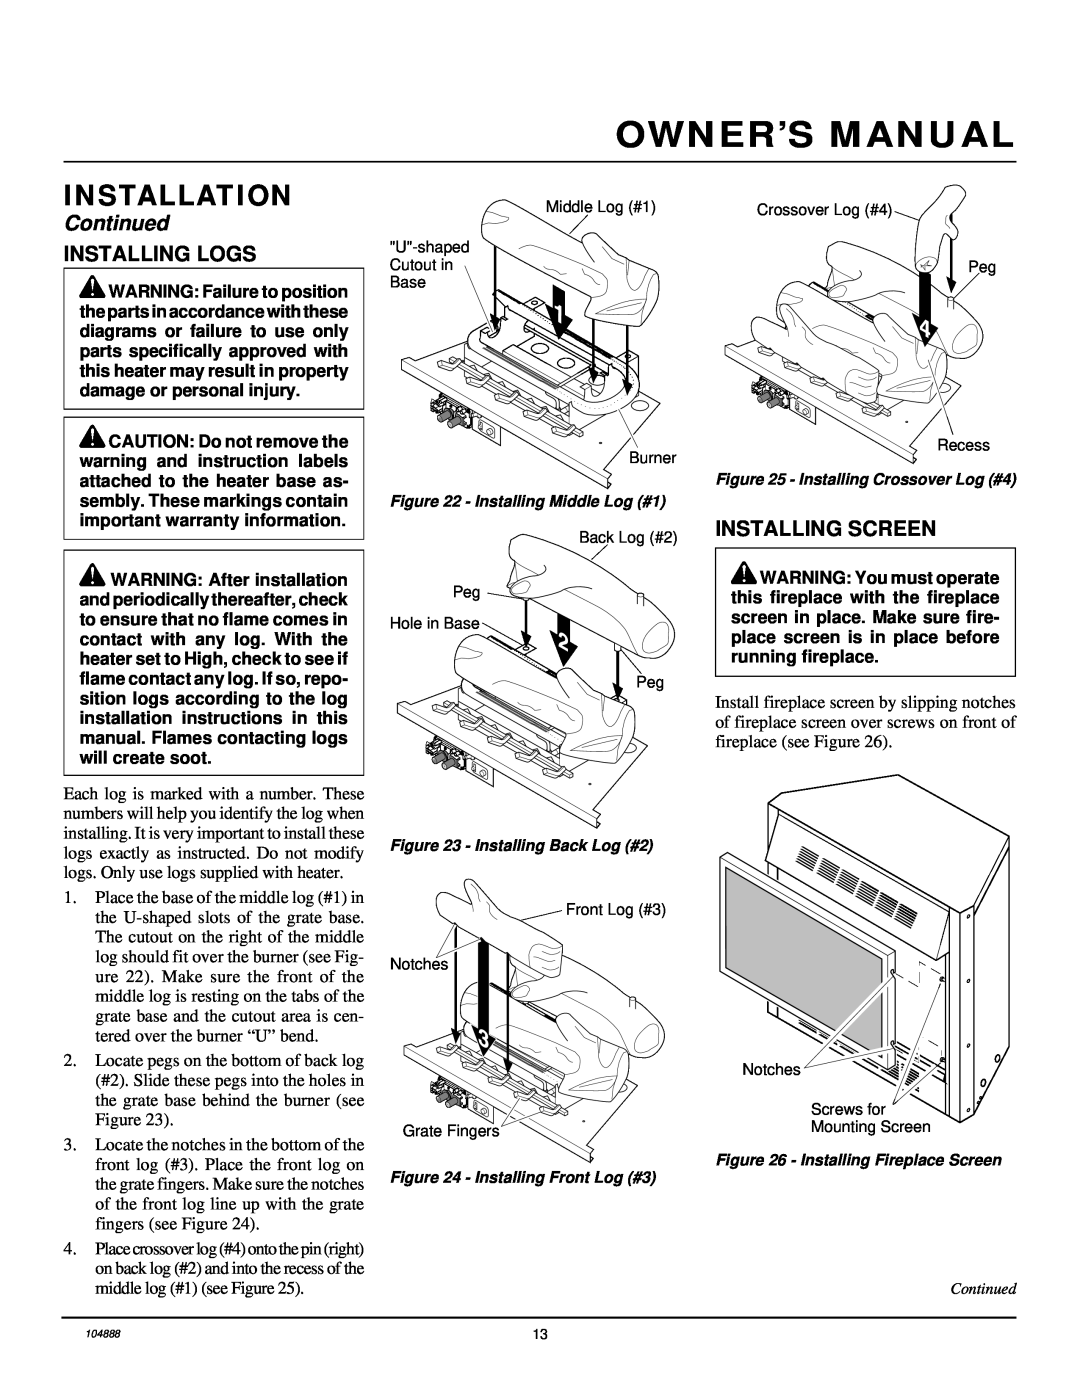 Desa LFP33PR installation manual Installing Logs, Installing Screen, Installation, Continued 